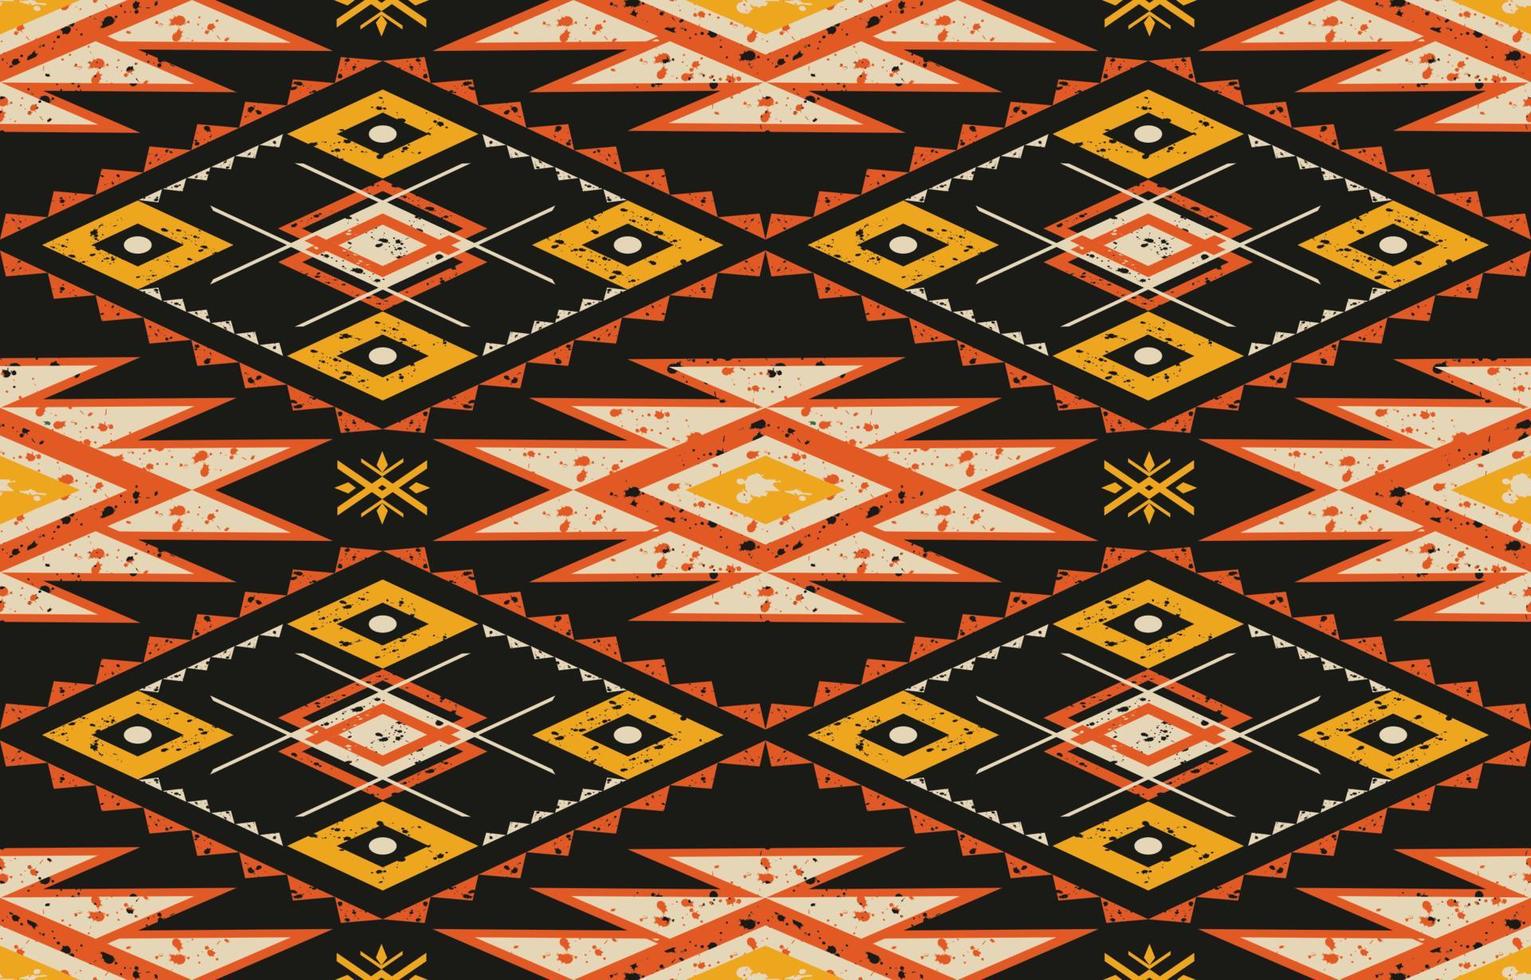 patrón geométrico transparente, textura étnica tribal, diseño para imprimir en productos, tradicional para fondo, bufanda, ropa, envoltura, tela, alfombra, papel tapiz, batik, estilo de bordado. Ilustración vectorial. vector